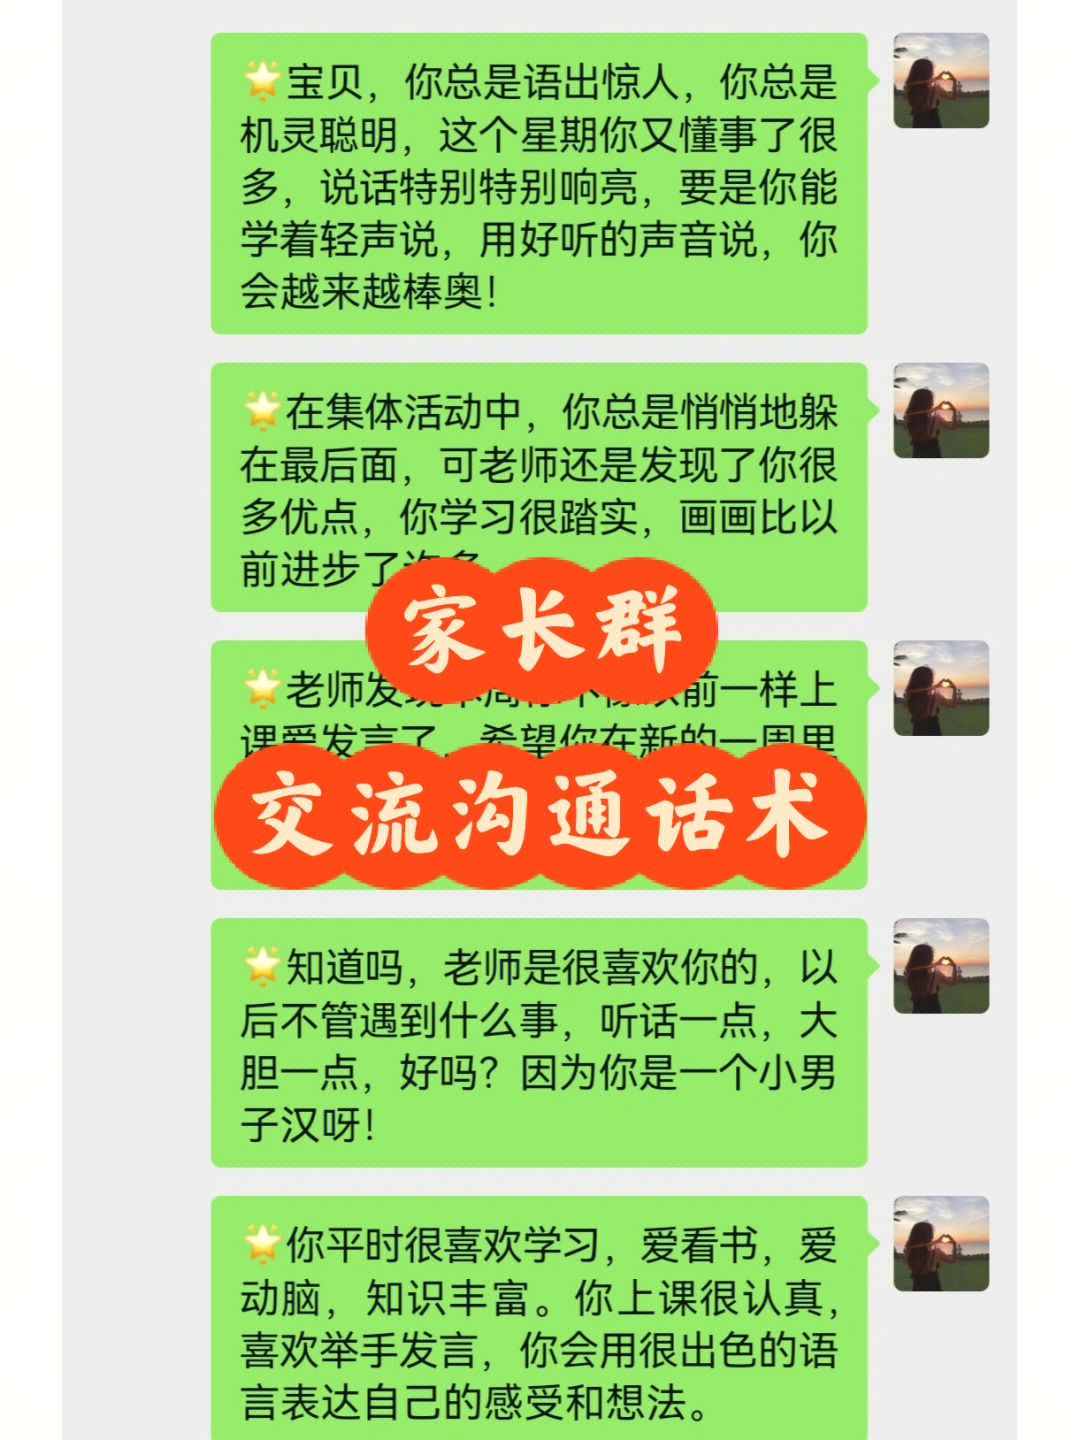 全球领先即时通讯应用 最新中文版发布